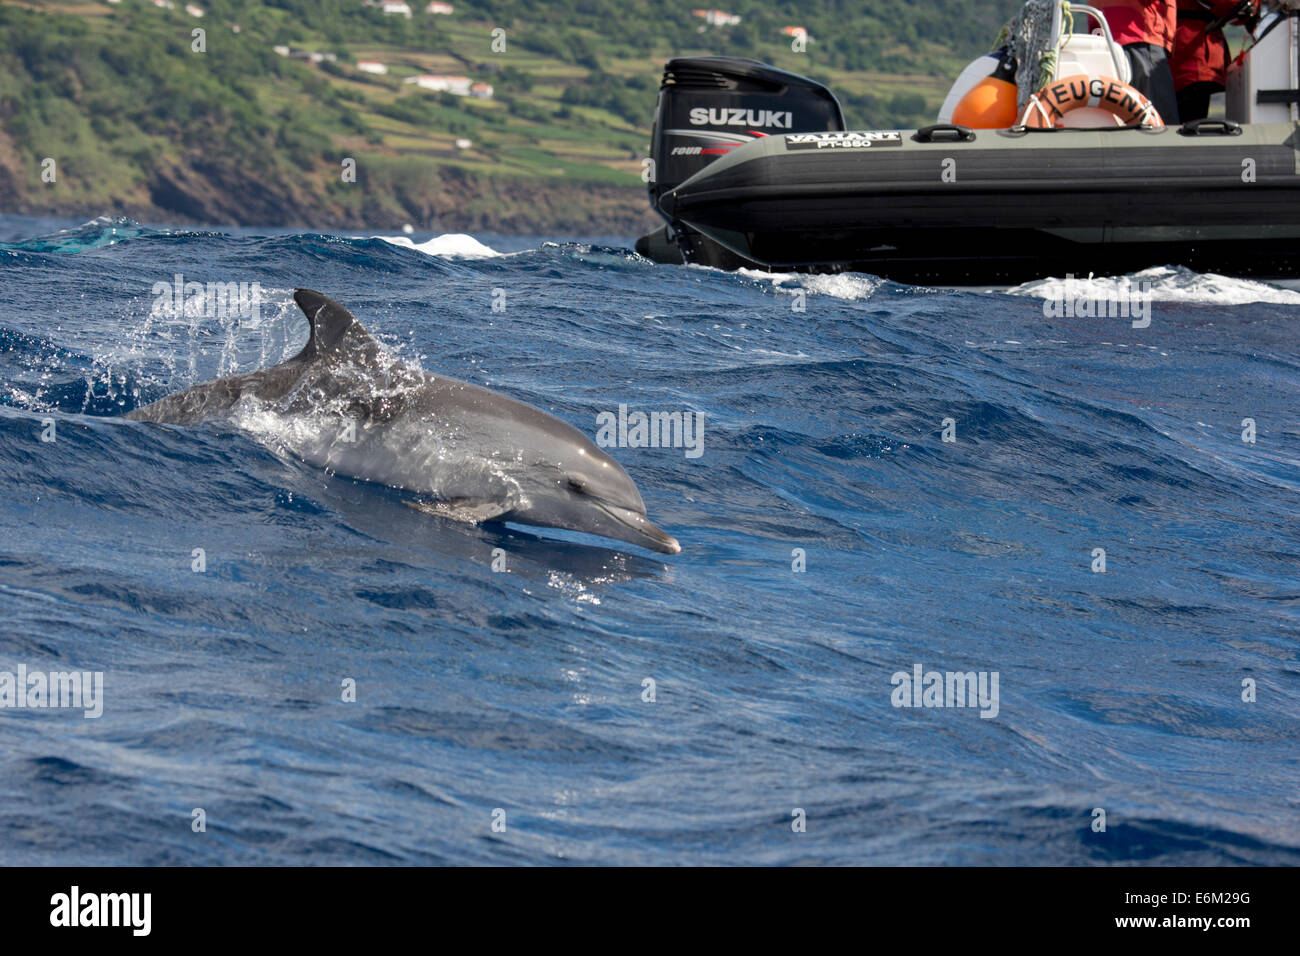 Los turistas observan un delfín moteado Atlántico (Stenella frontalis) durante un viaje de avistamiento de cetáceos. Azores, el Océano Atlántico. Foto de stock